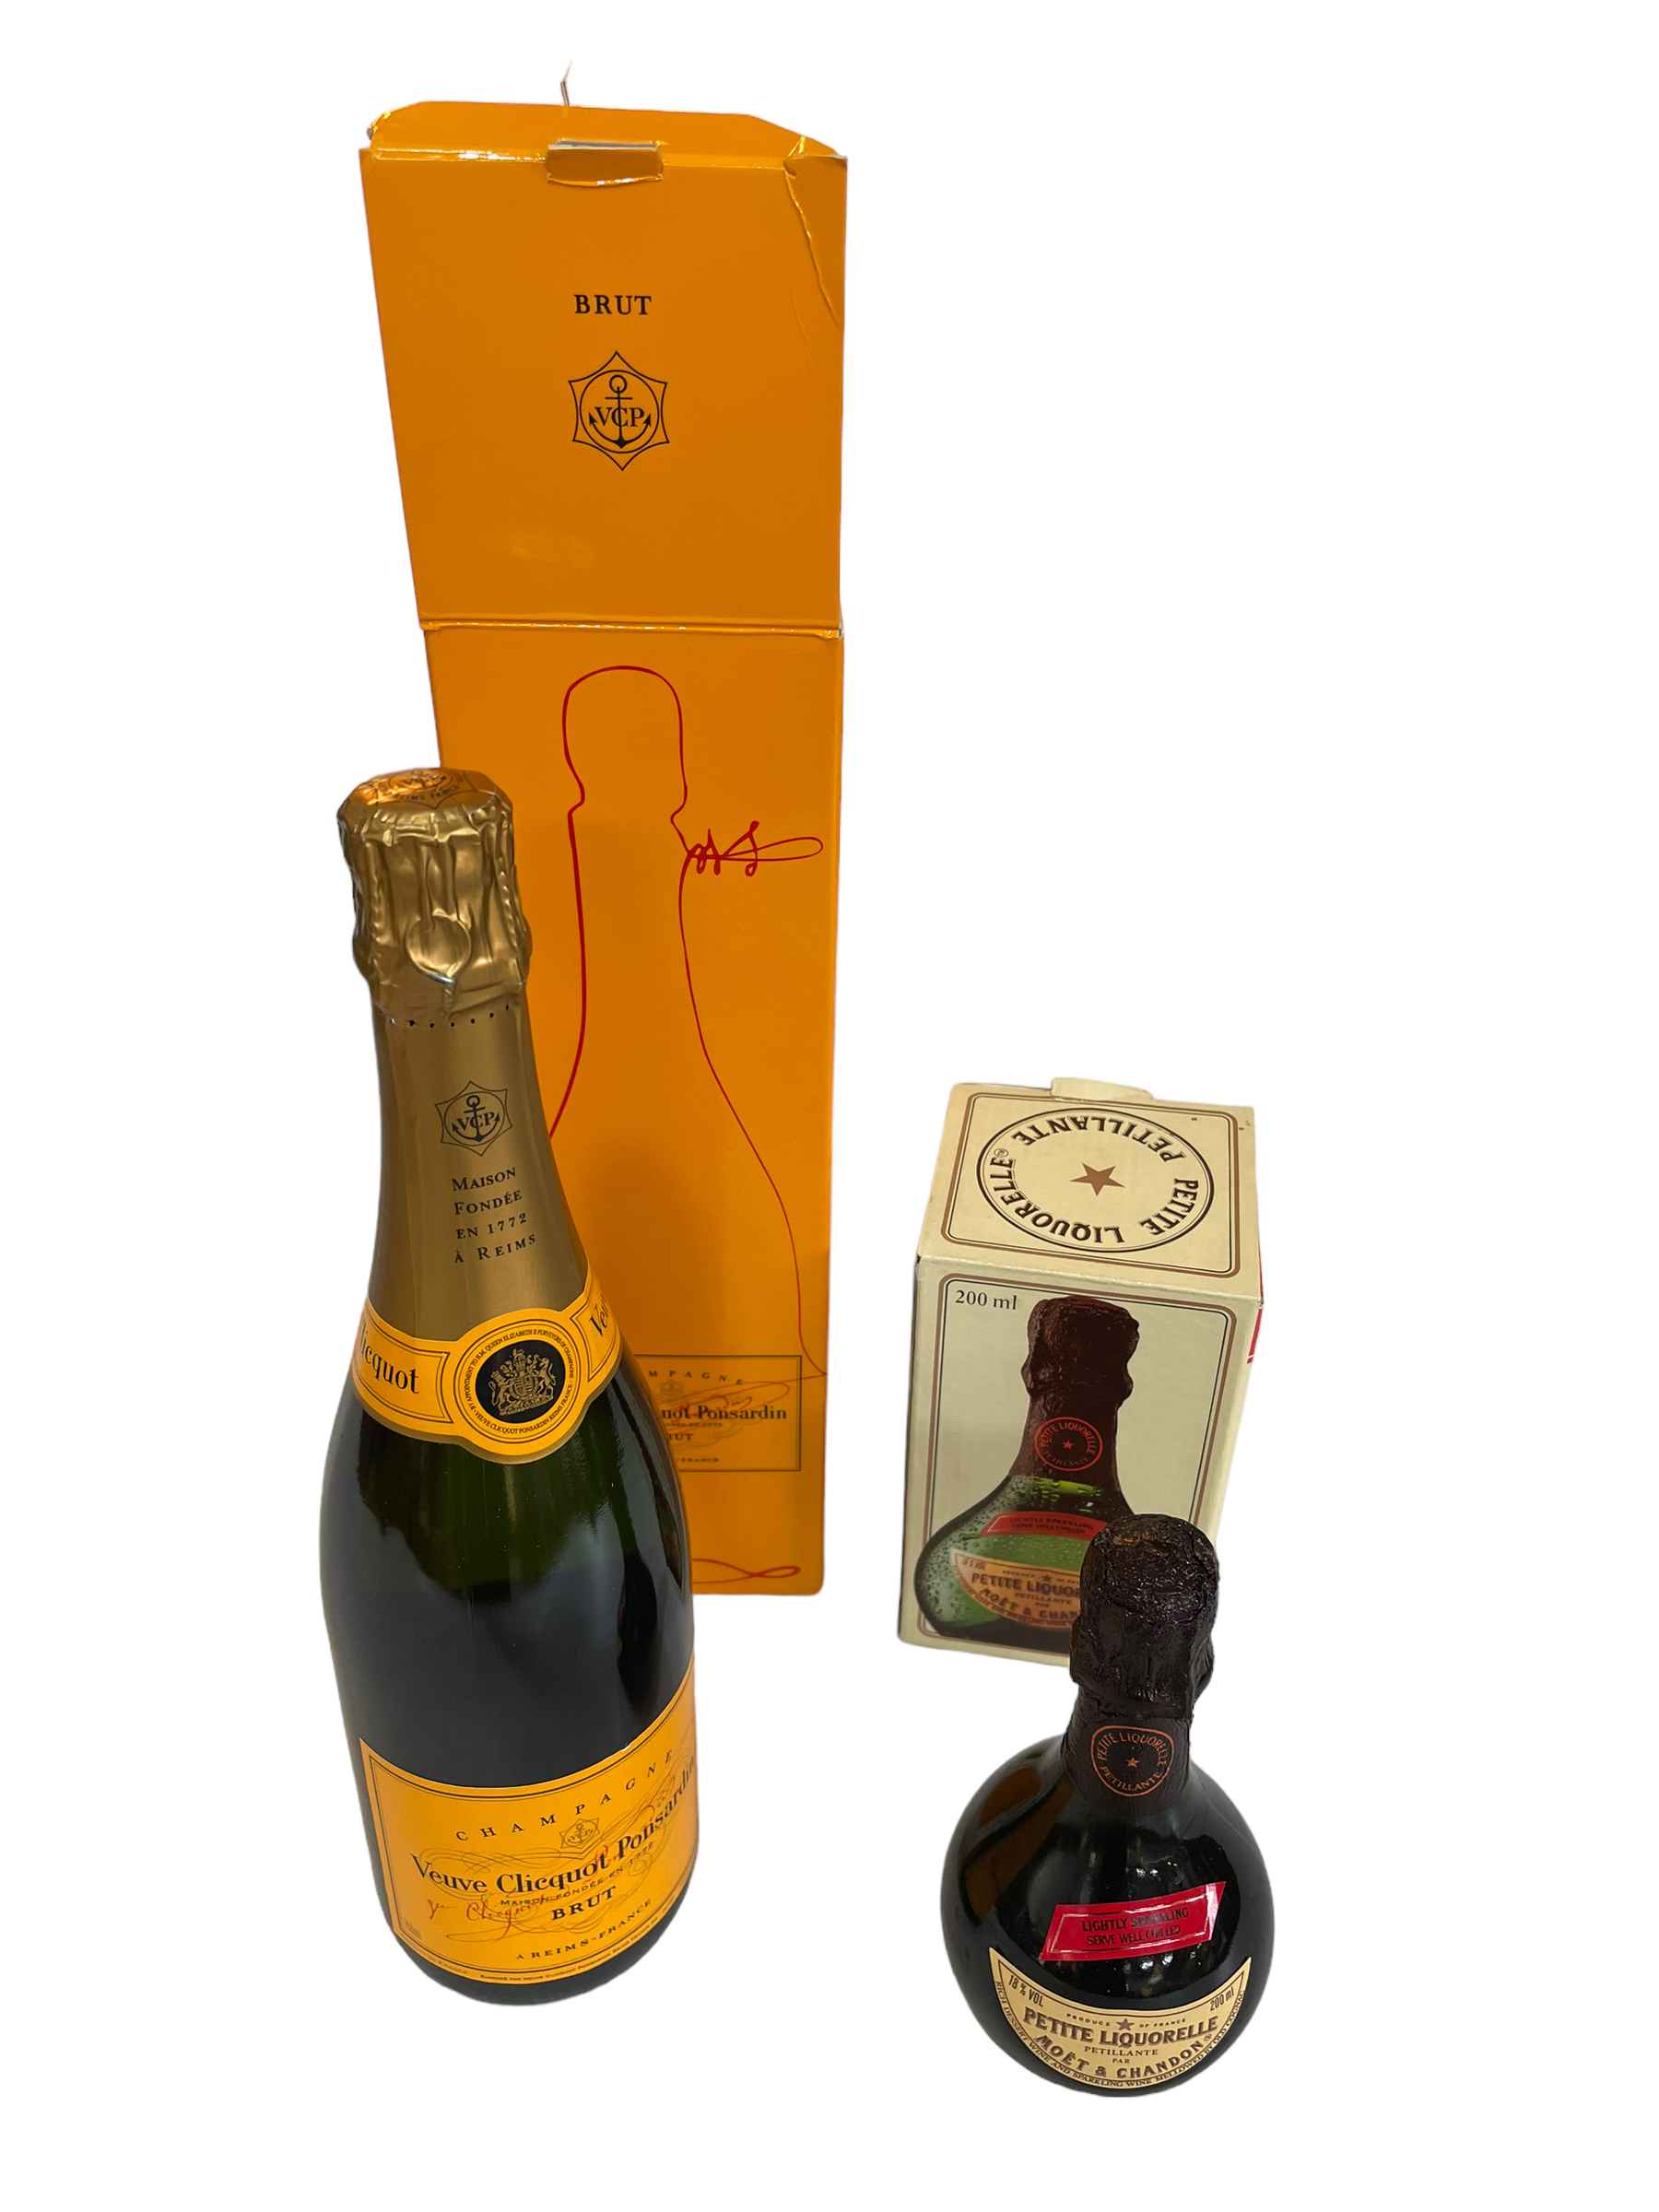 Boxed Veuve Cliquot Ponsardin champagne and Moet Petite Liquorelle (2).